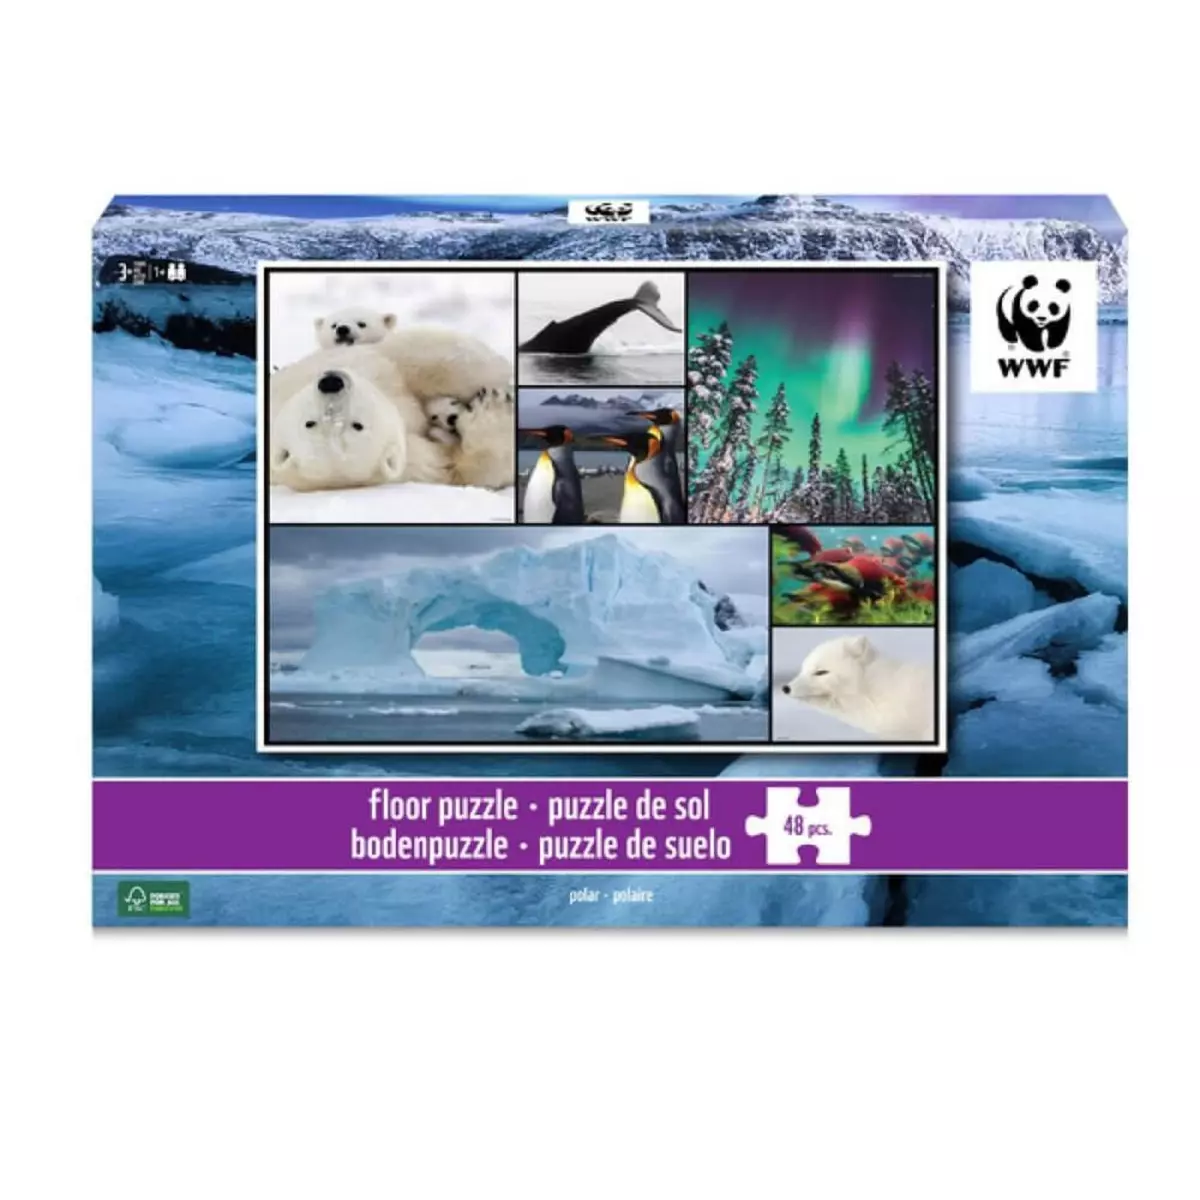 WWF Puzzle de sol 48 pièces : Polaire